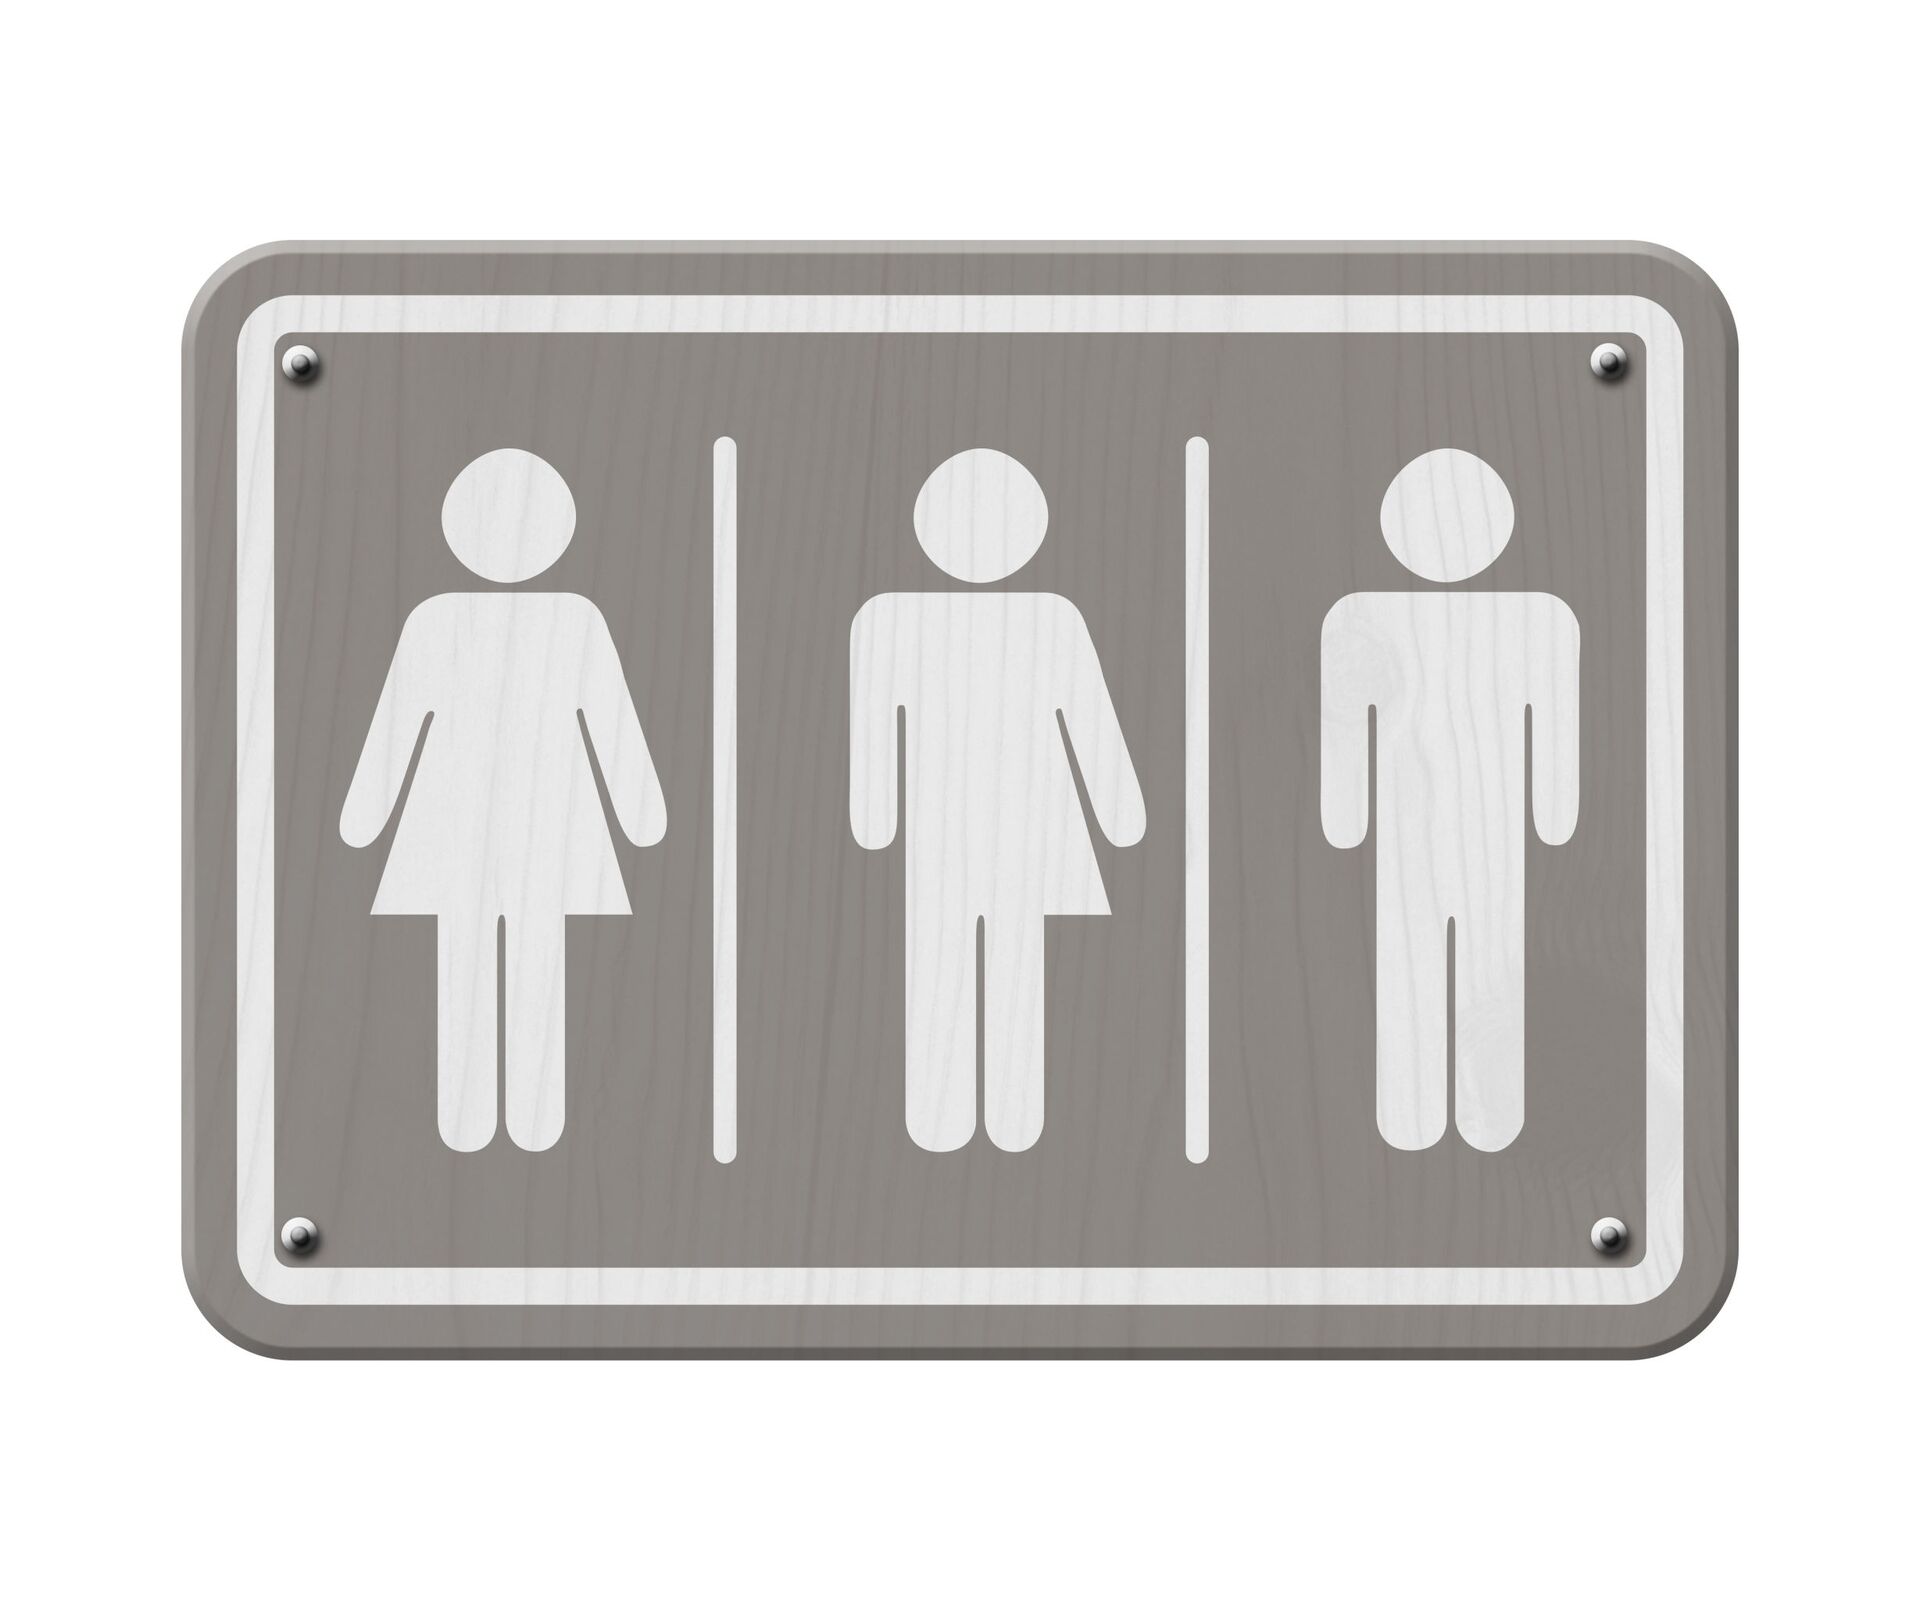 Một dấu hiệu biểu thị một người phụ nữ, một người đàn ông và một người chuyển giới - Sputnik Việt Nam, 1920, 19.07.2022